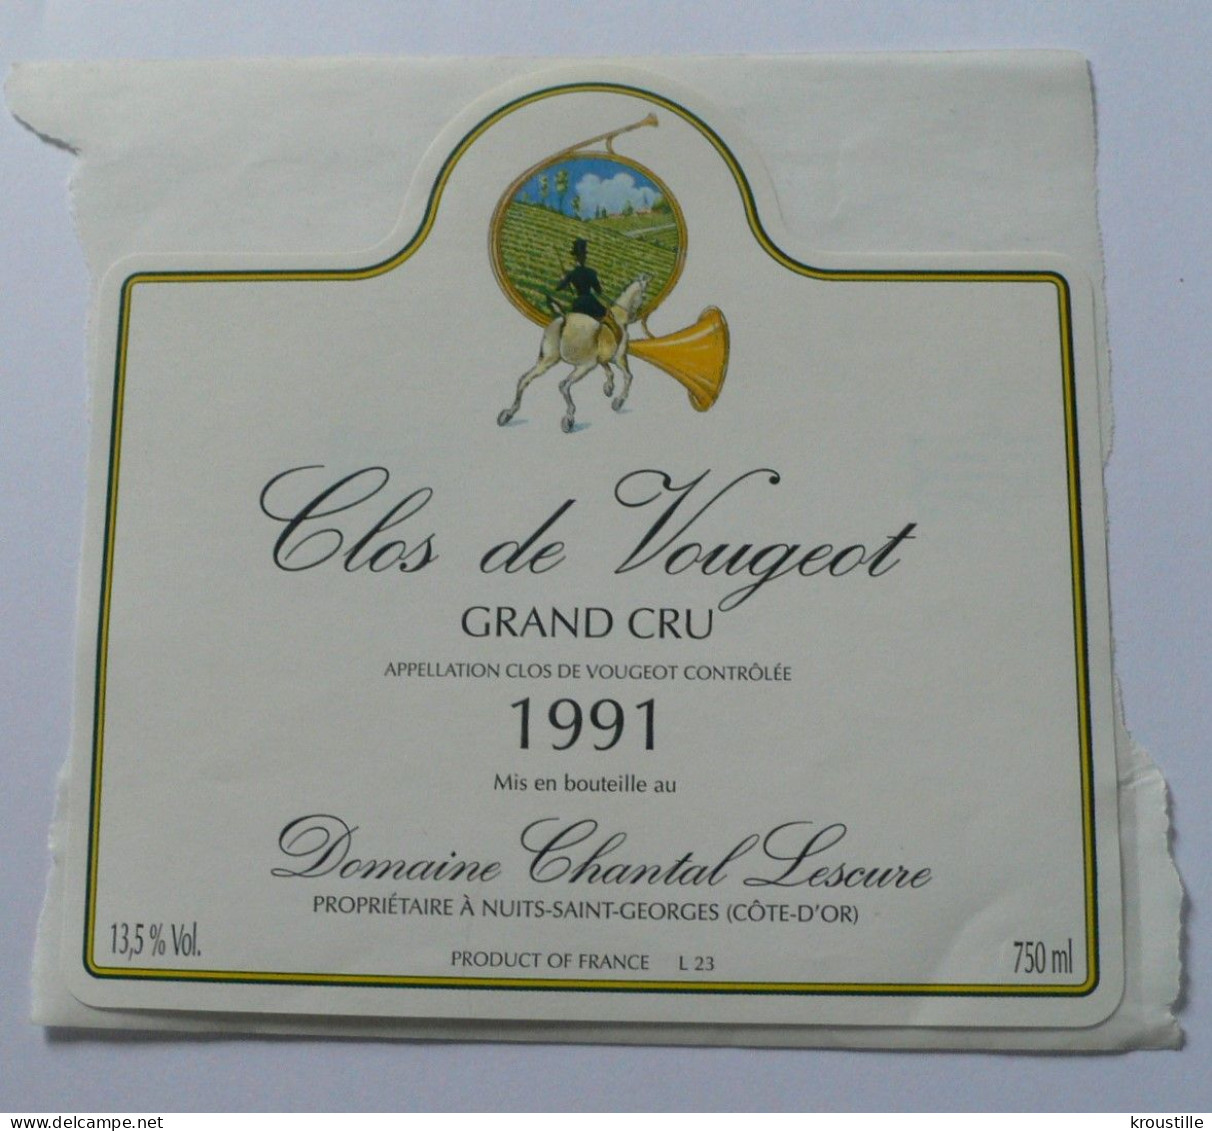 CLOS DE VOUGEOT - GRAND CRU 1991 - ETIQUETTE NEUVE - THEME CHASSE - Hunting